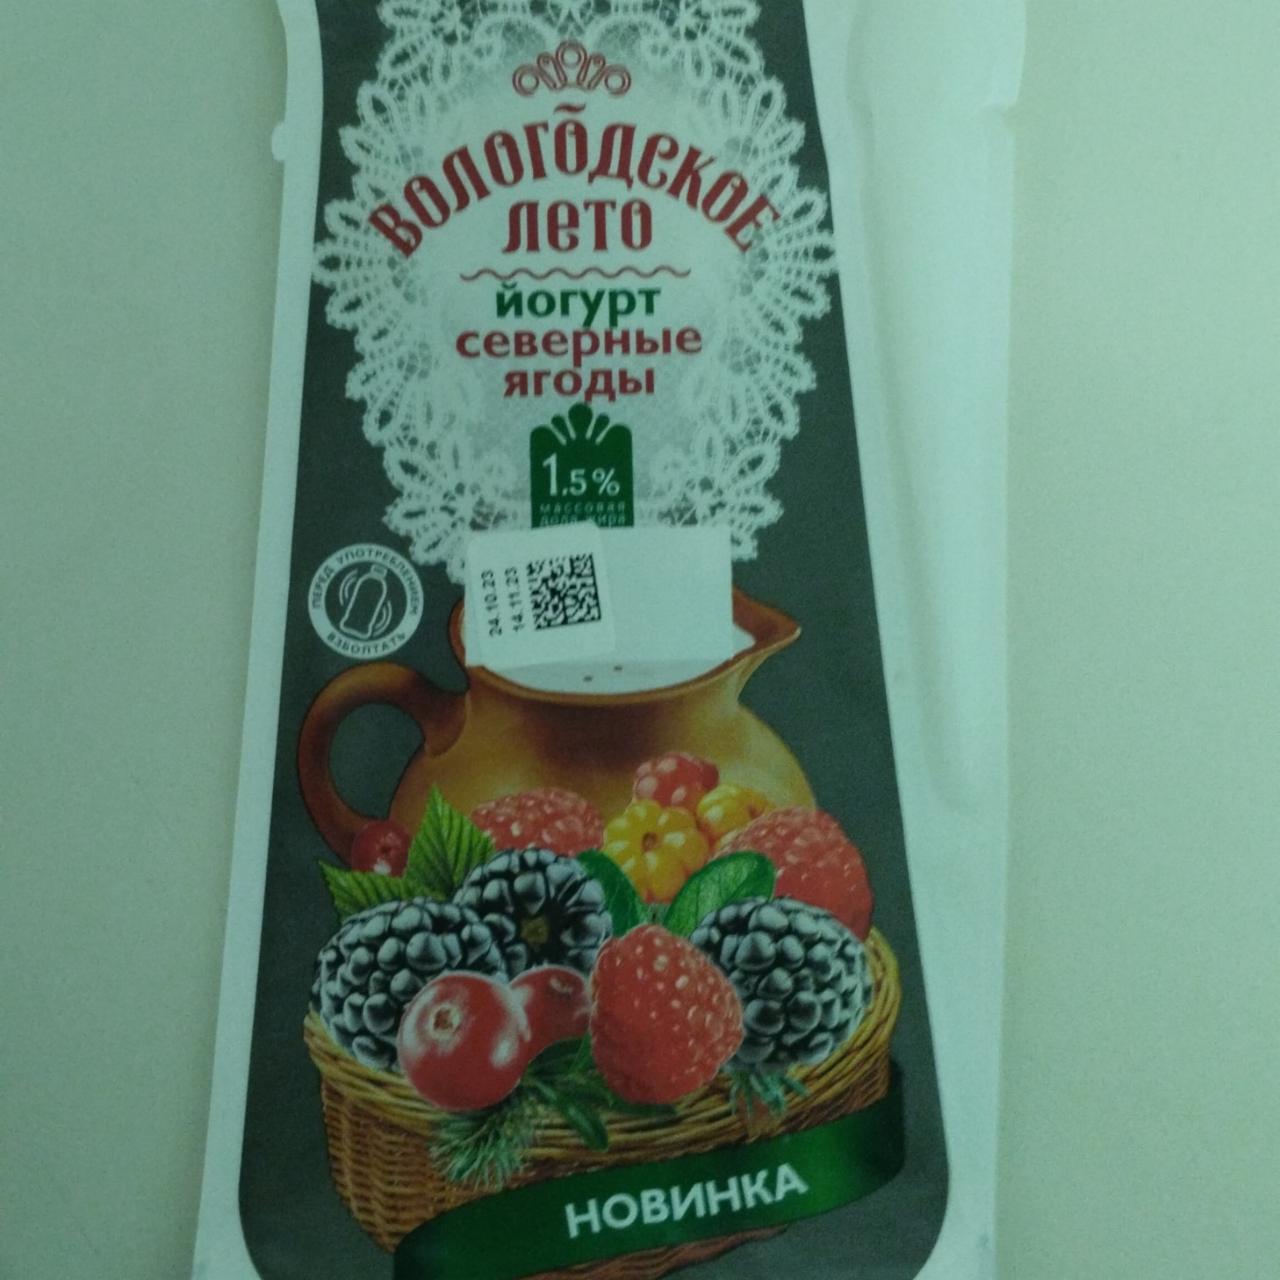 Фото - йогурт лесные ягоды Вологодское лето